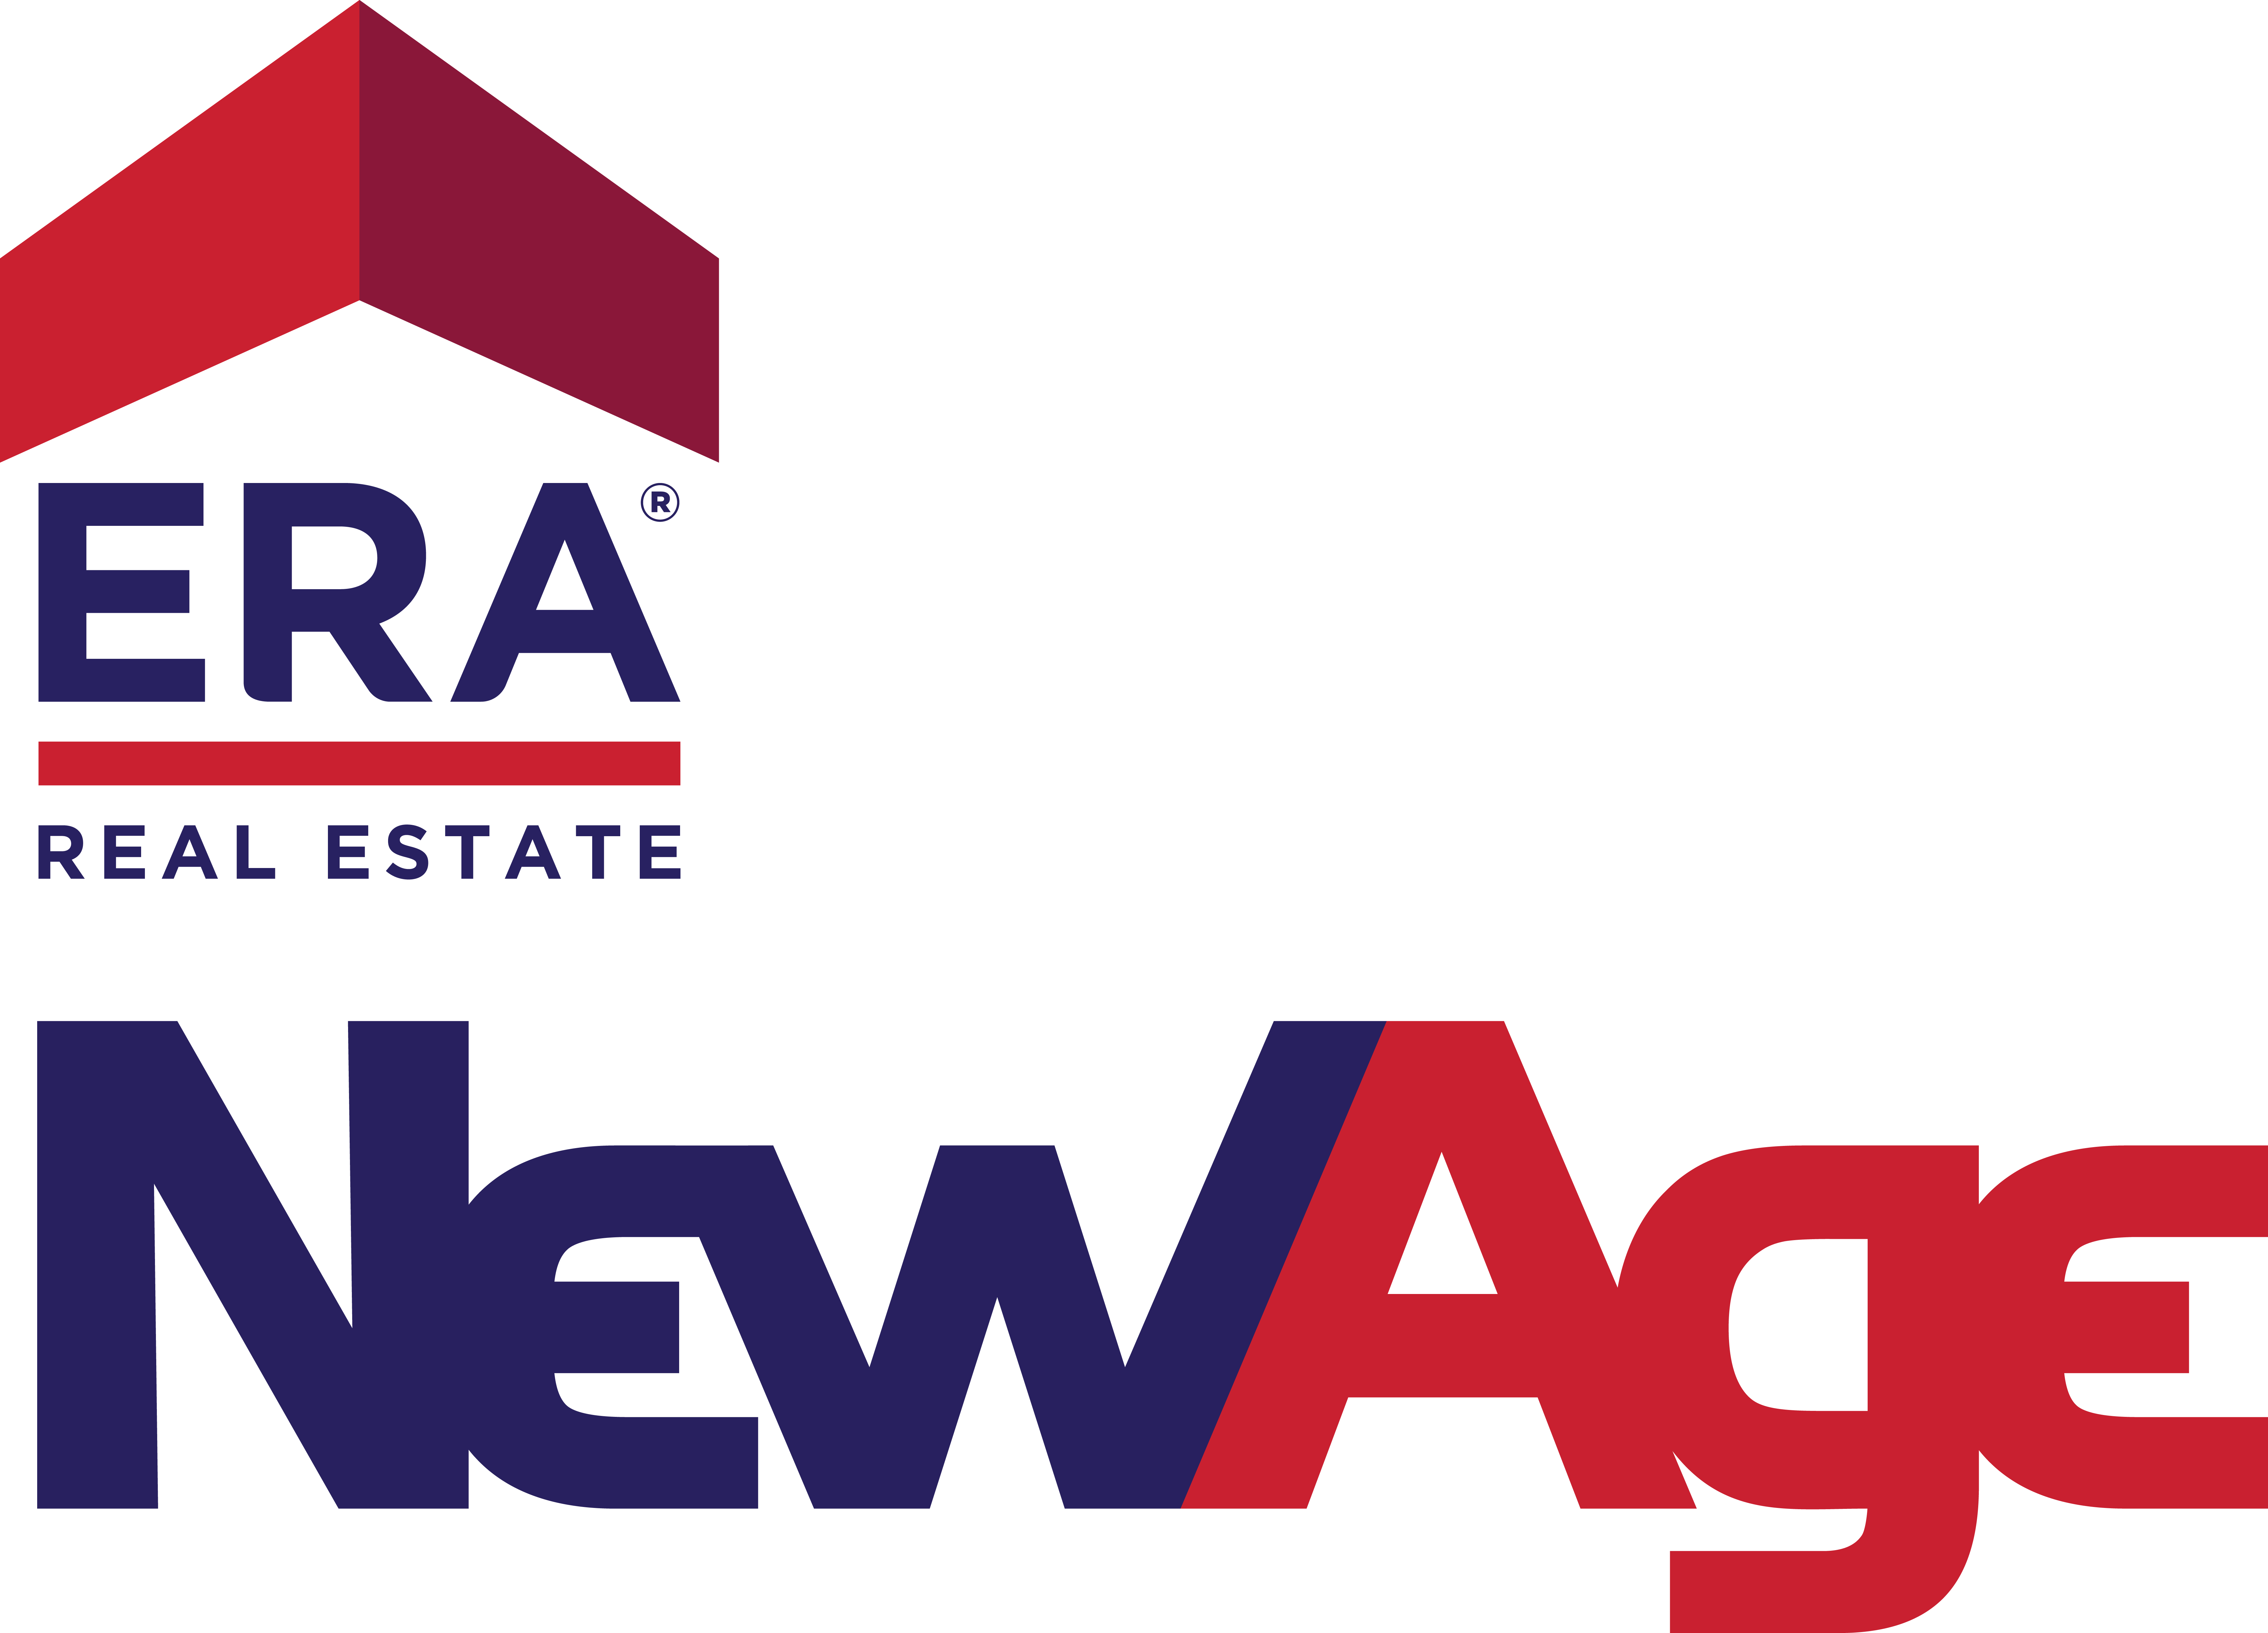 ERA New Age Real Estate Company